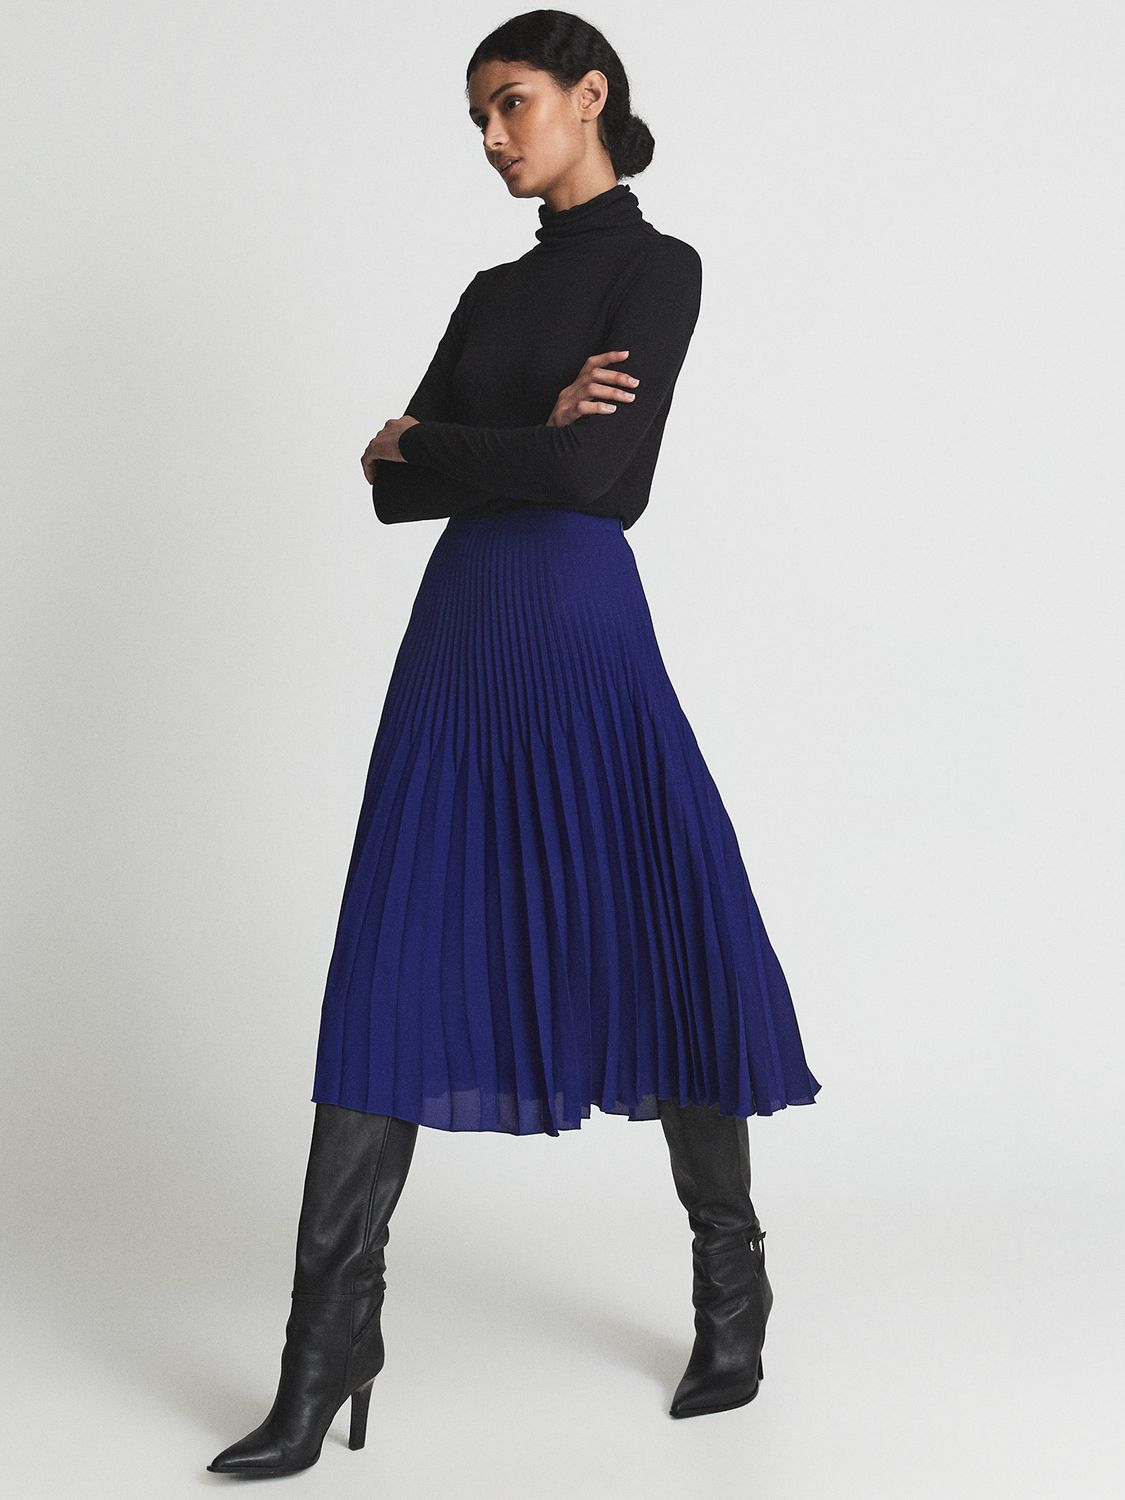 Reiss Isadora Pleated Midi Skirt, Cobalt Blue, 6